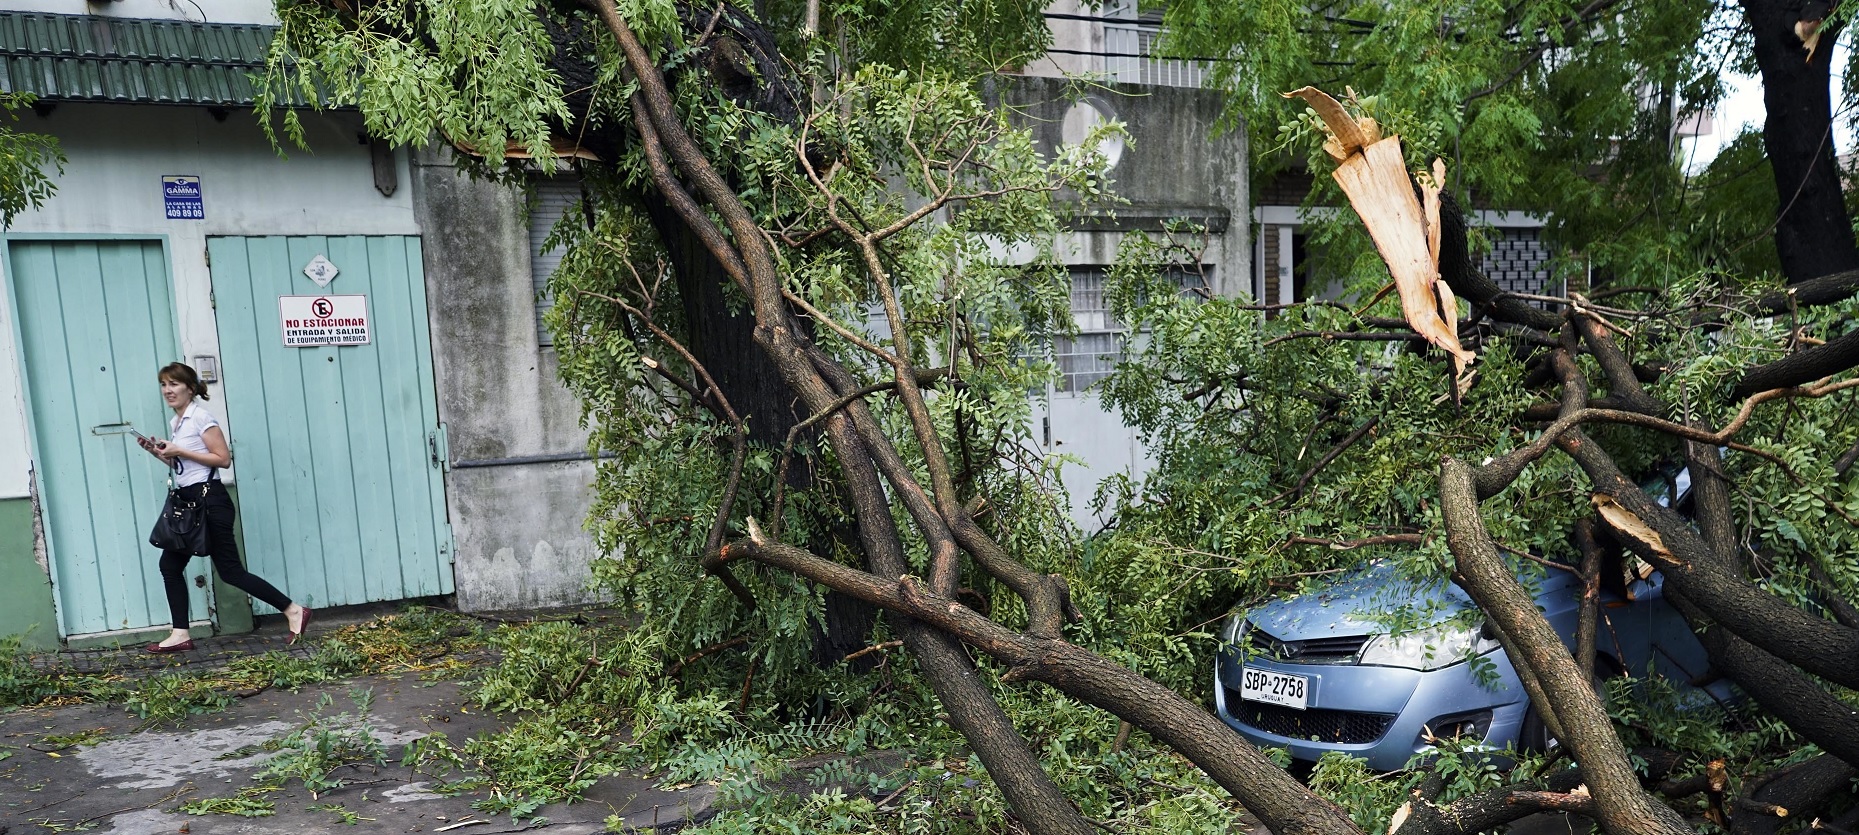 Un automóvil permanece cubierto por un árbol caído en Montevideo, Uruguay, debido al viento que ha generado destrozos en la ciudad (AP)